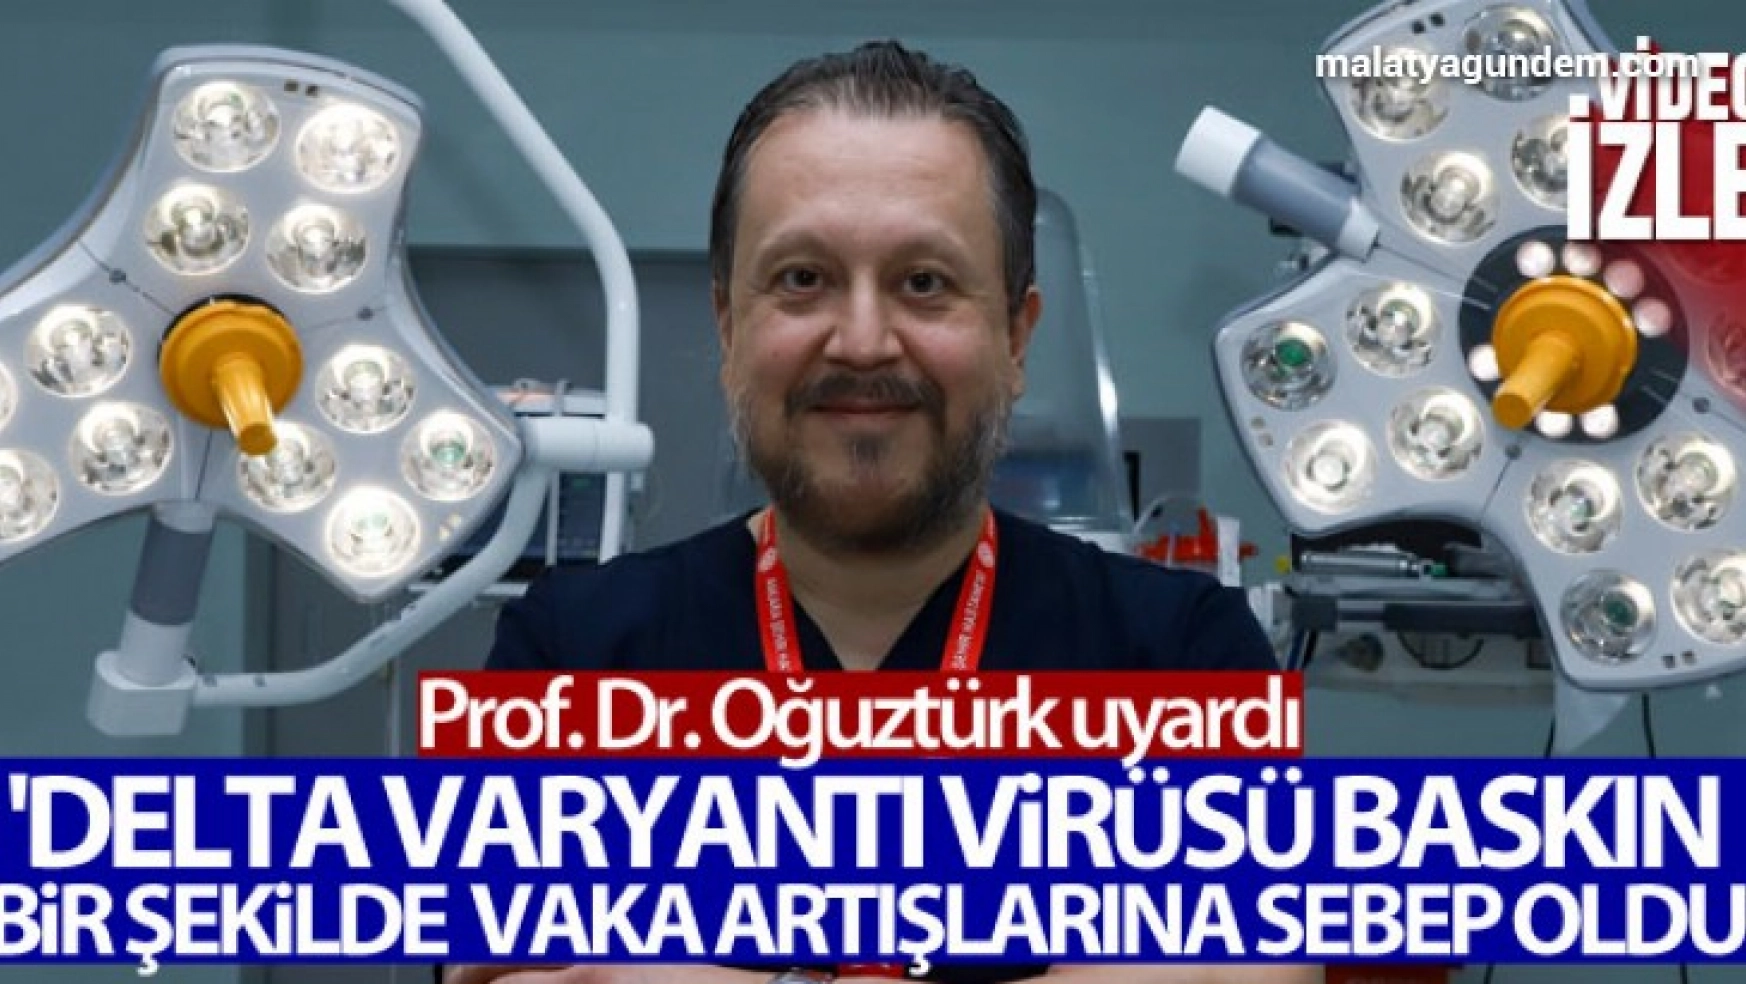 Prof. Dr. Oğuztürk uyardı